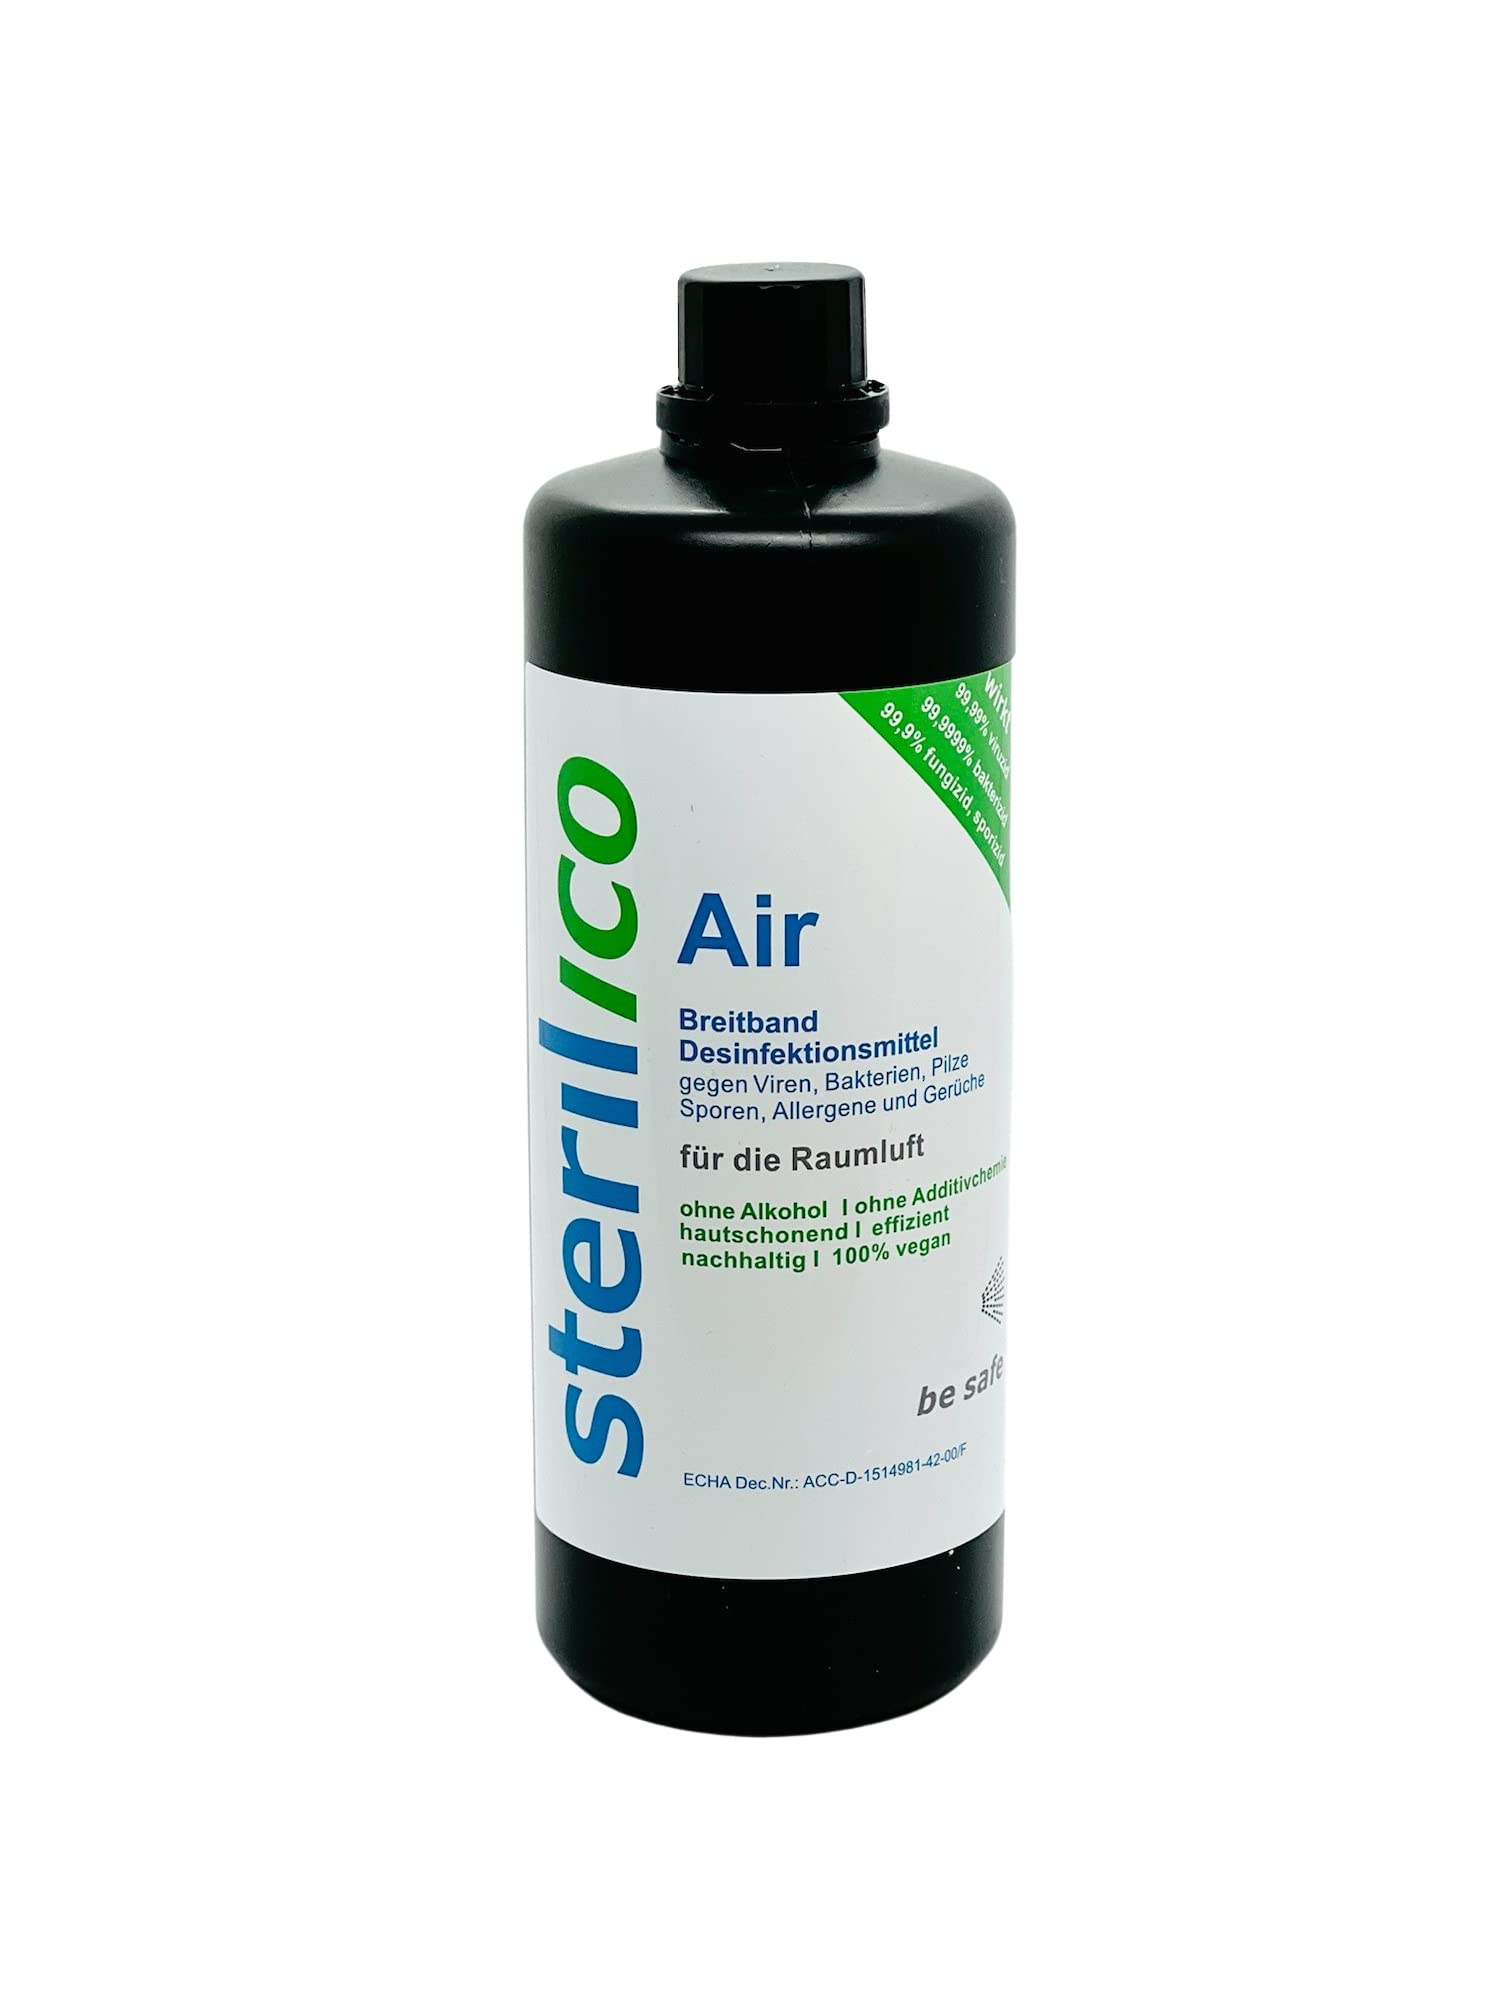 sterilico – Air – Desinfektionsmittel zur Vernebelung in der Raumluft (1000ml)